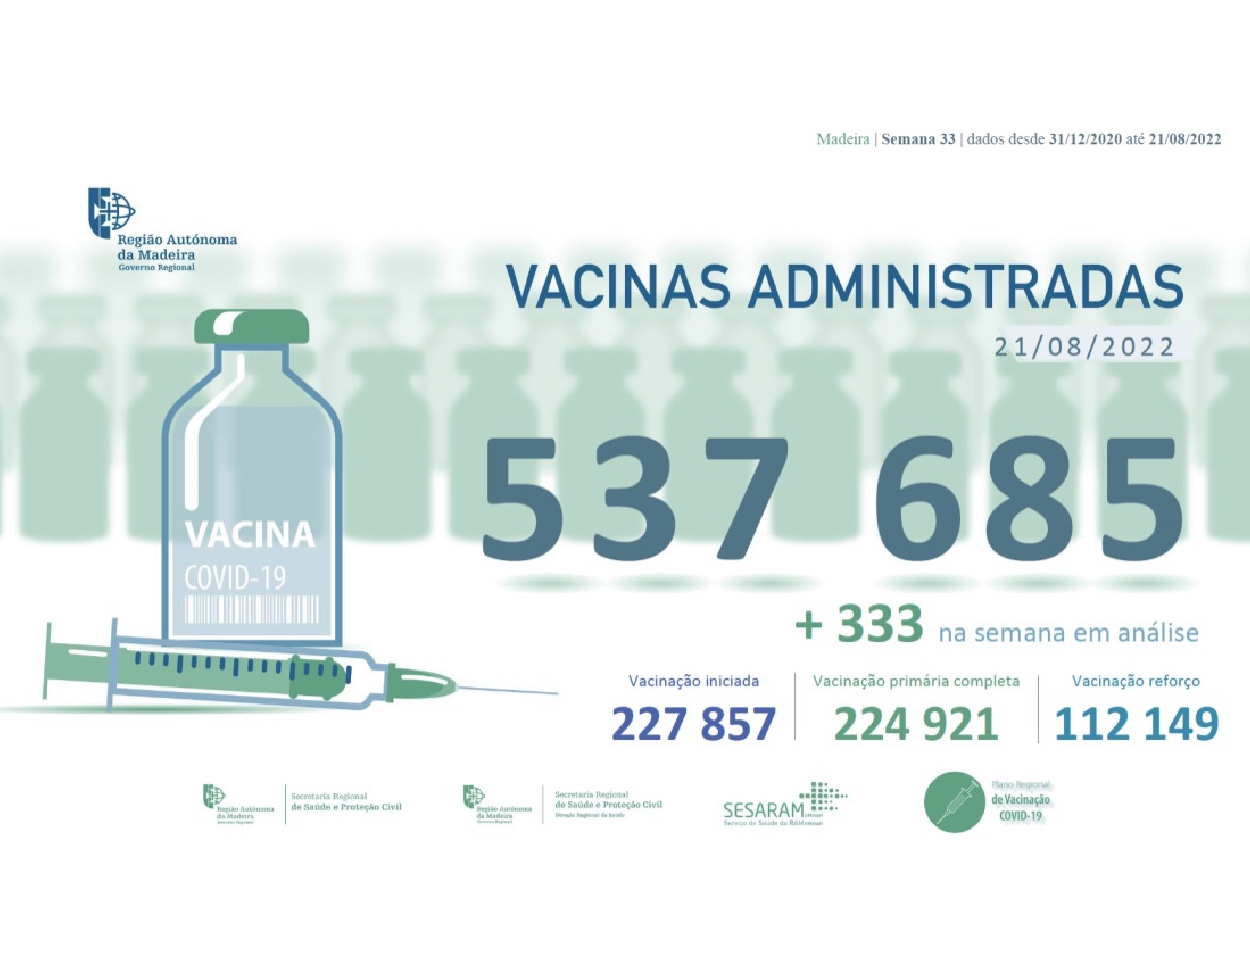 Administradas mais de 537 685 vacinas contra a COVID-19 na RAM